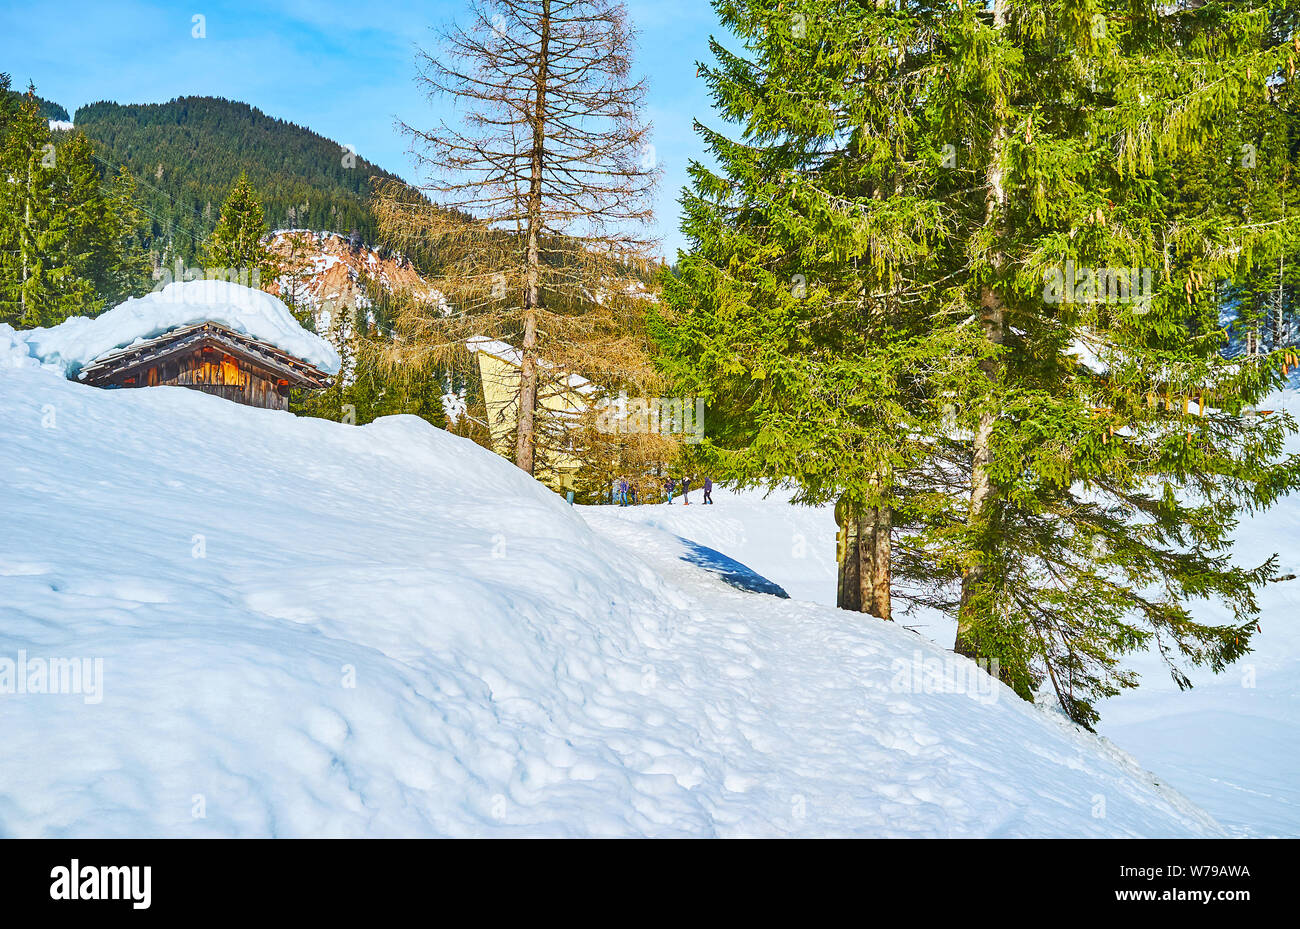 Der tiefe Schnee deckt Highland Valley in Dachstein Alpen, das Dach des alten Holzhaus durch die hohen schneewehen, Gosau, Österreich zu sehen ist Stockfoto